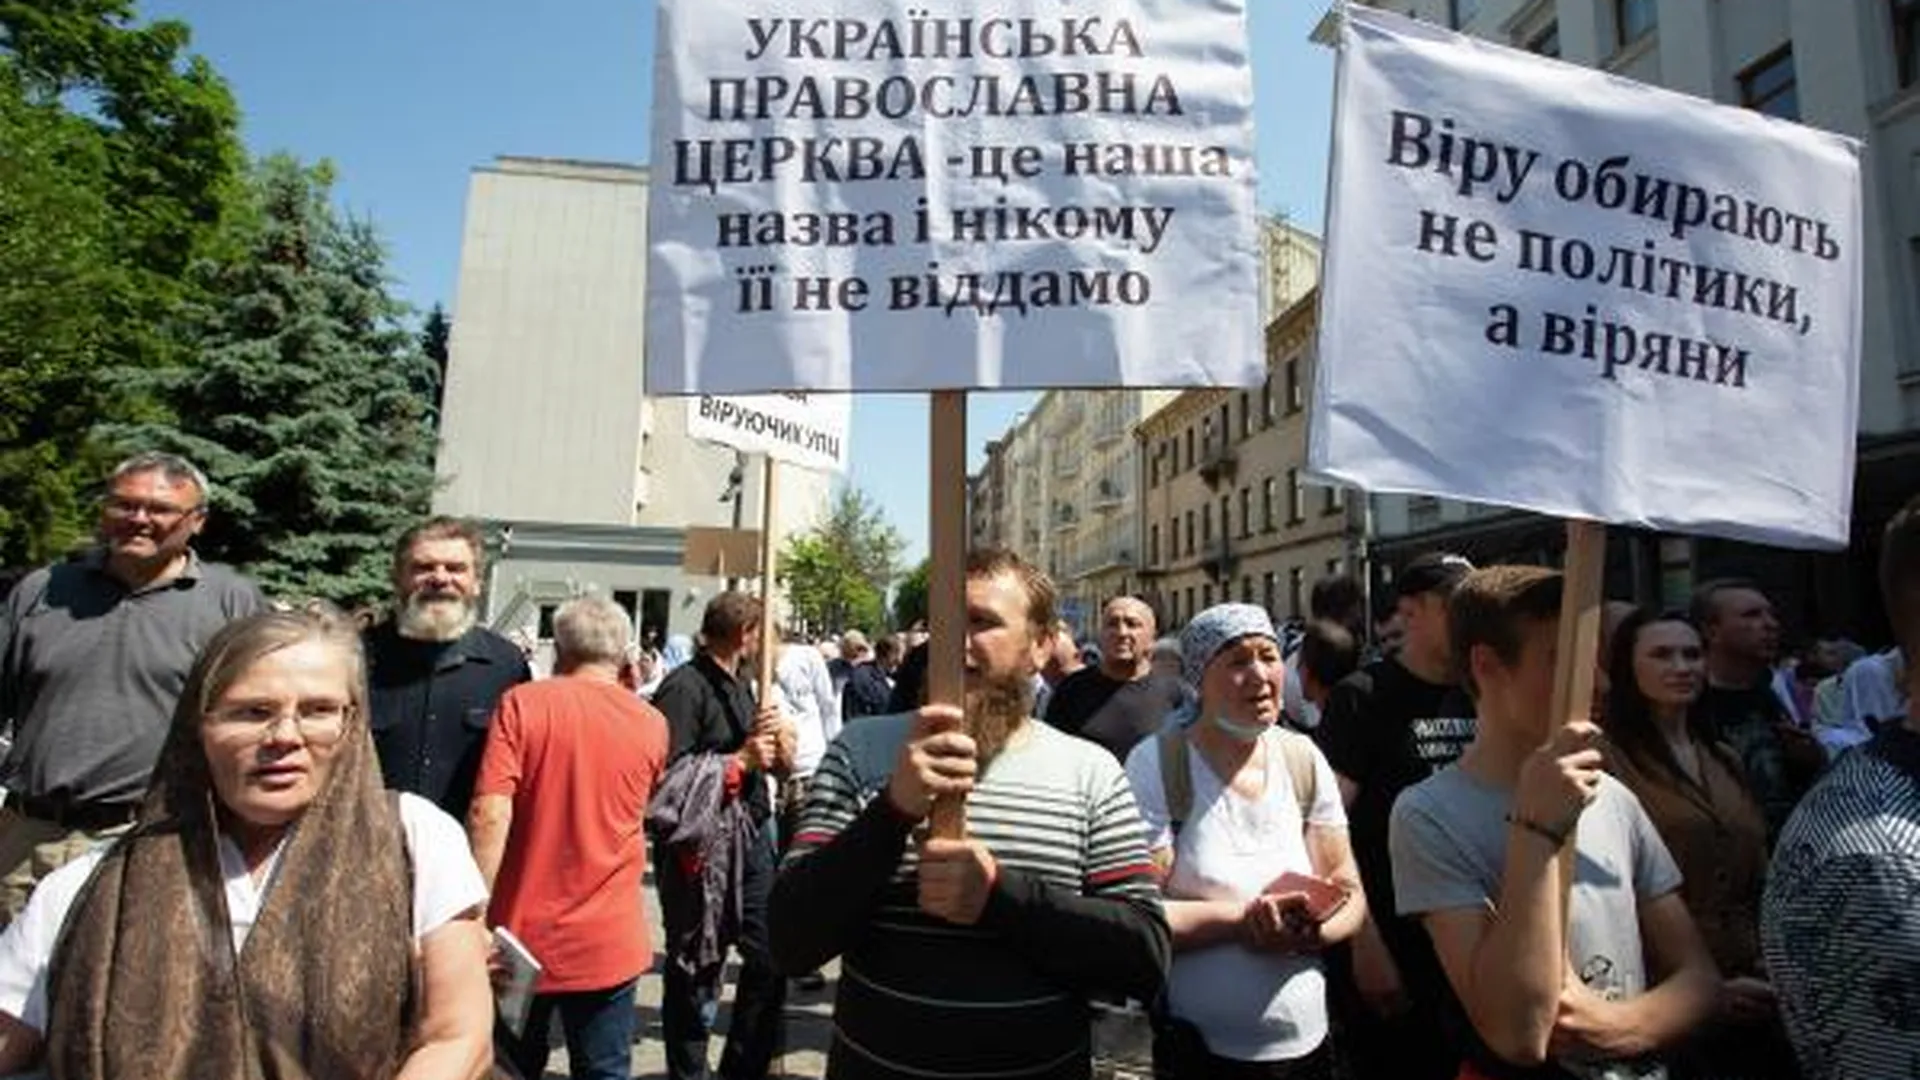 Сторонники Украинской православной церкви (Московский патриархат) проводят акцию протеста у офиса президента в Киеве против ущемления своих прав, 2021 год